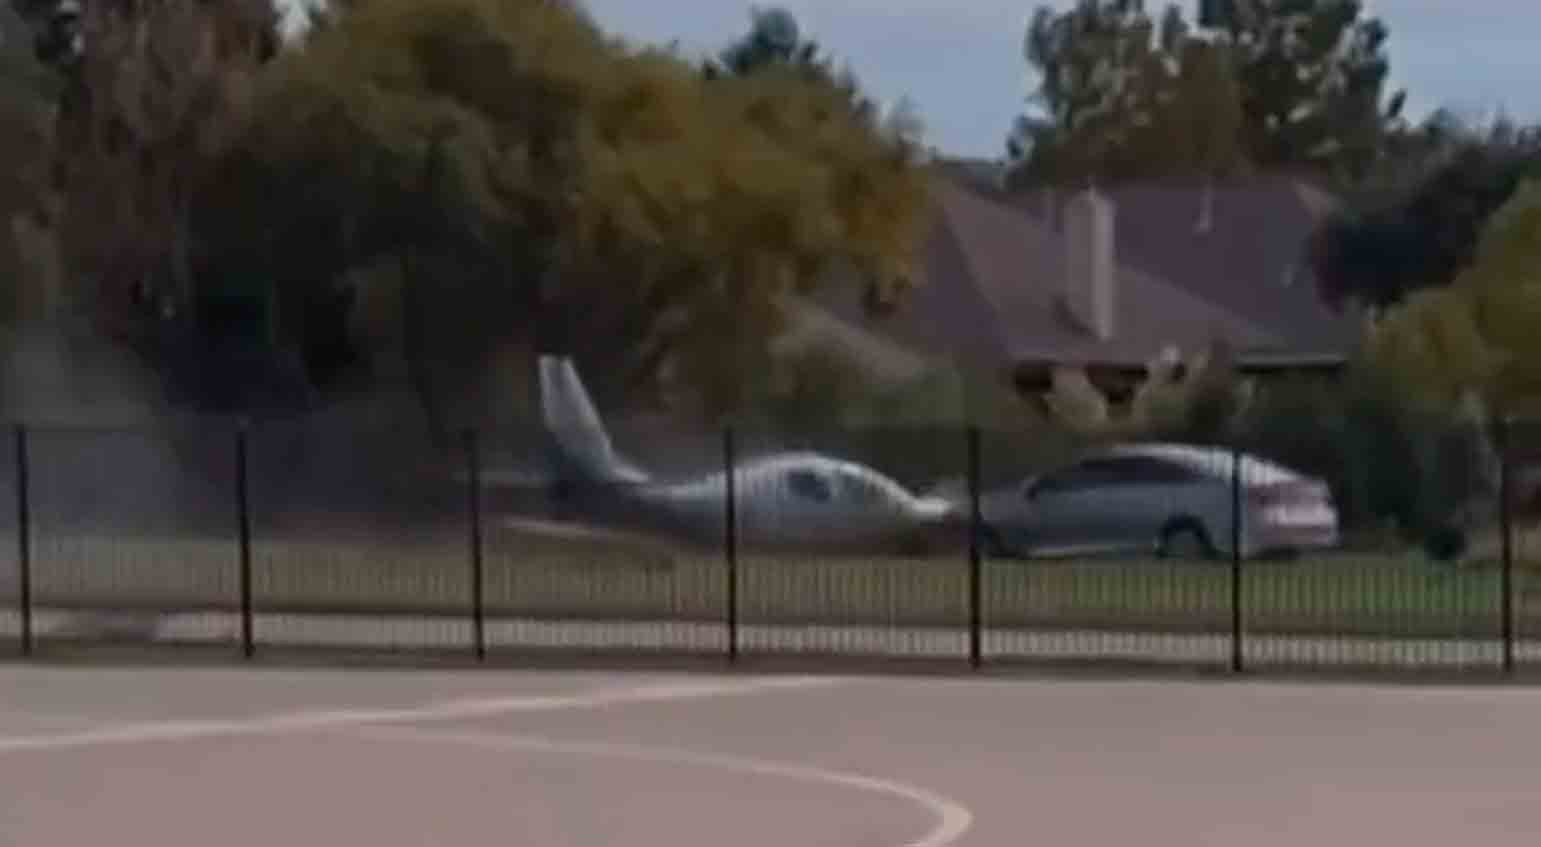 يُظهر الفيديو لحظة اصطدام طائرة بسيارة بعد هبوط اضطراري. الصورة والفيديو: إعادة إنتاج على تويتر @nexta_tv